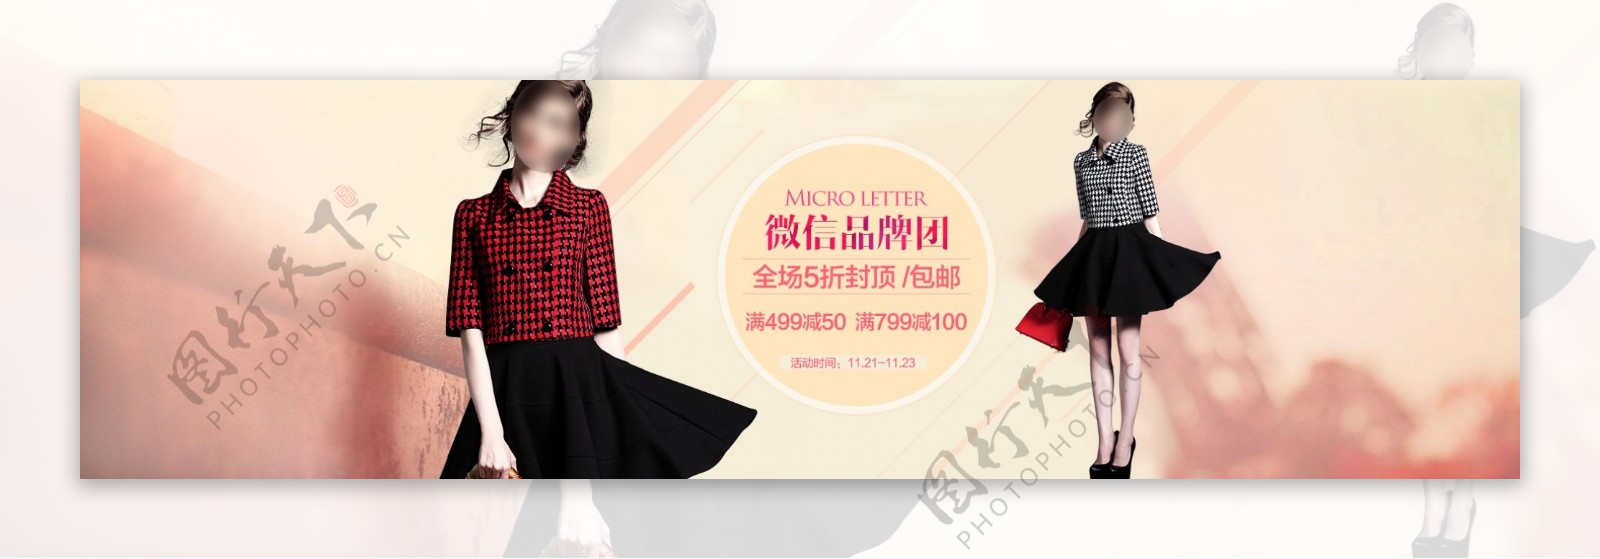 微信品牌团裙装促销海报设计PSD素材